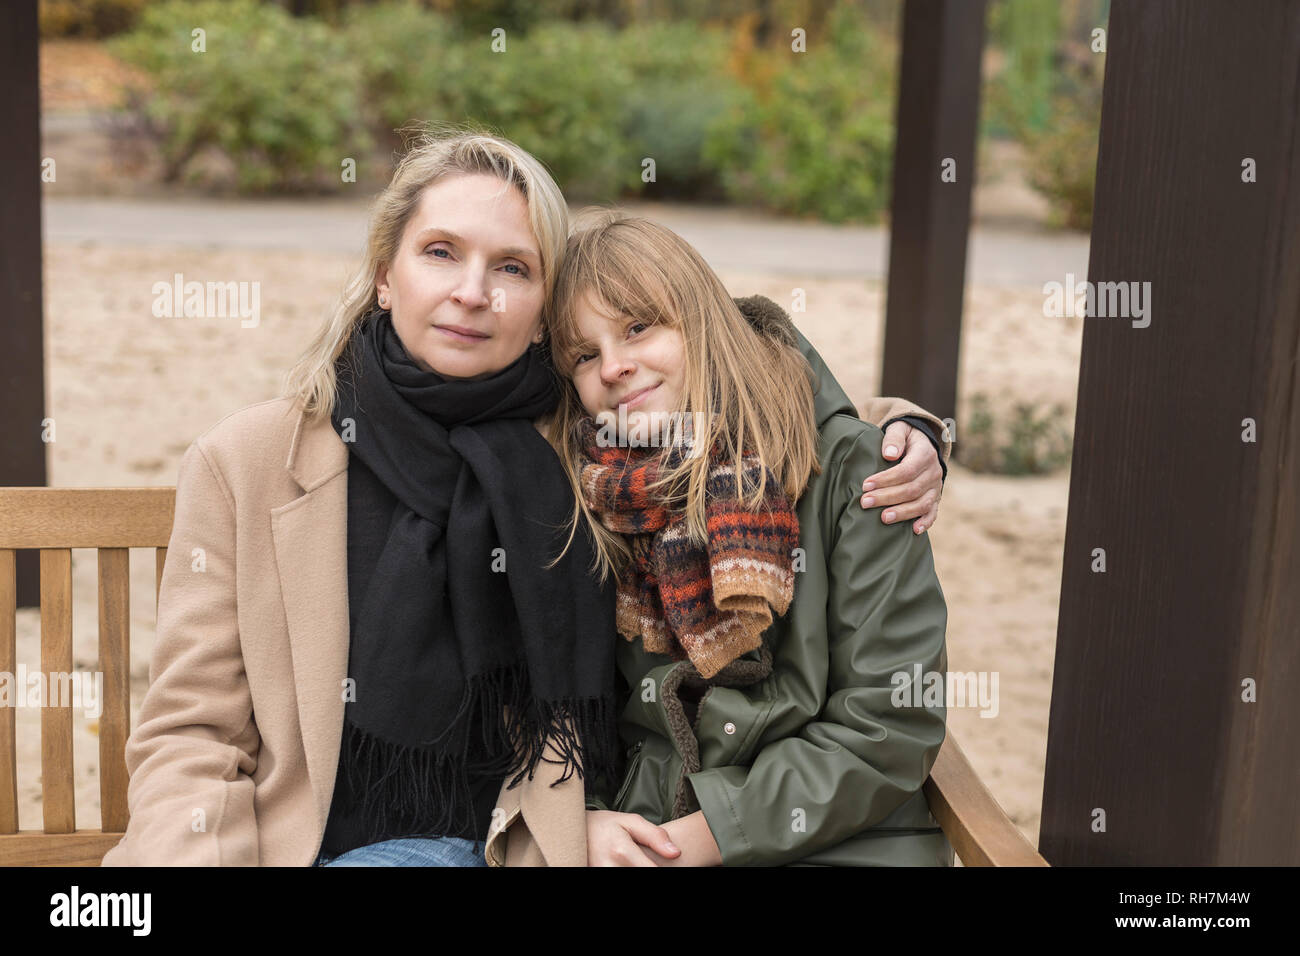 Retrato cariñosa madre e hija abrazando en banco del parque Foto de stock